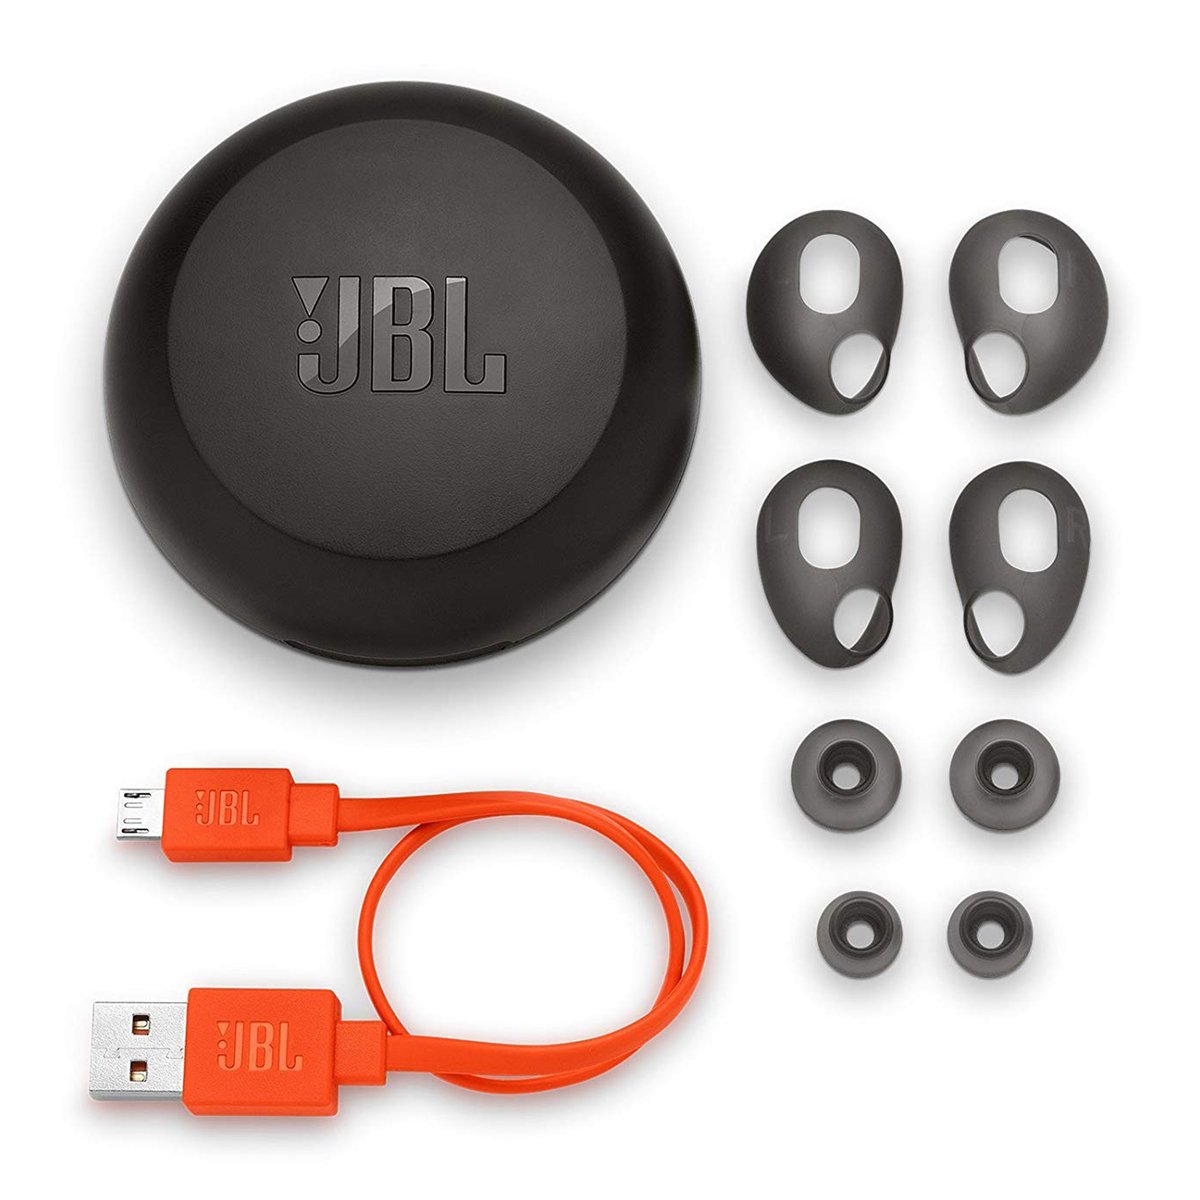 JBL Wireless in-Ear Headphones JBL FREE Black